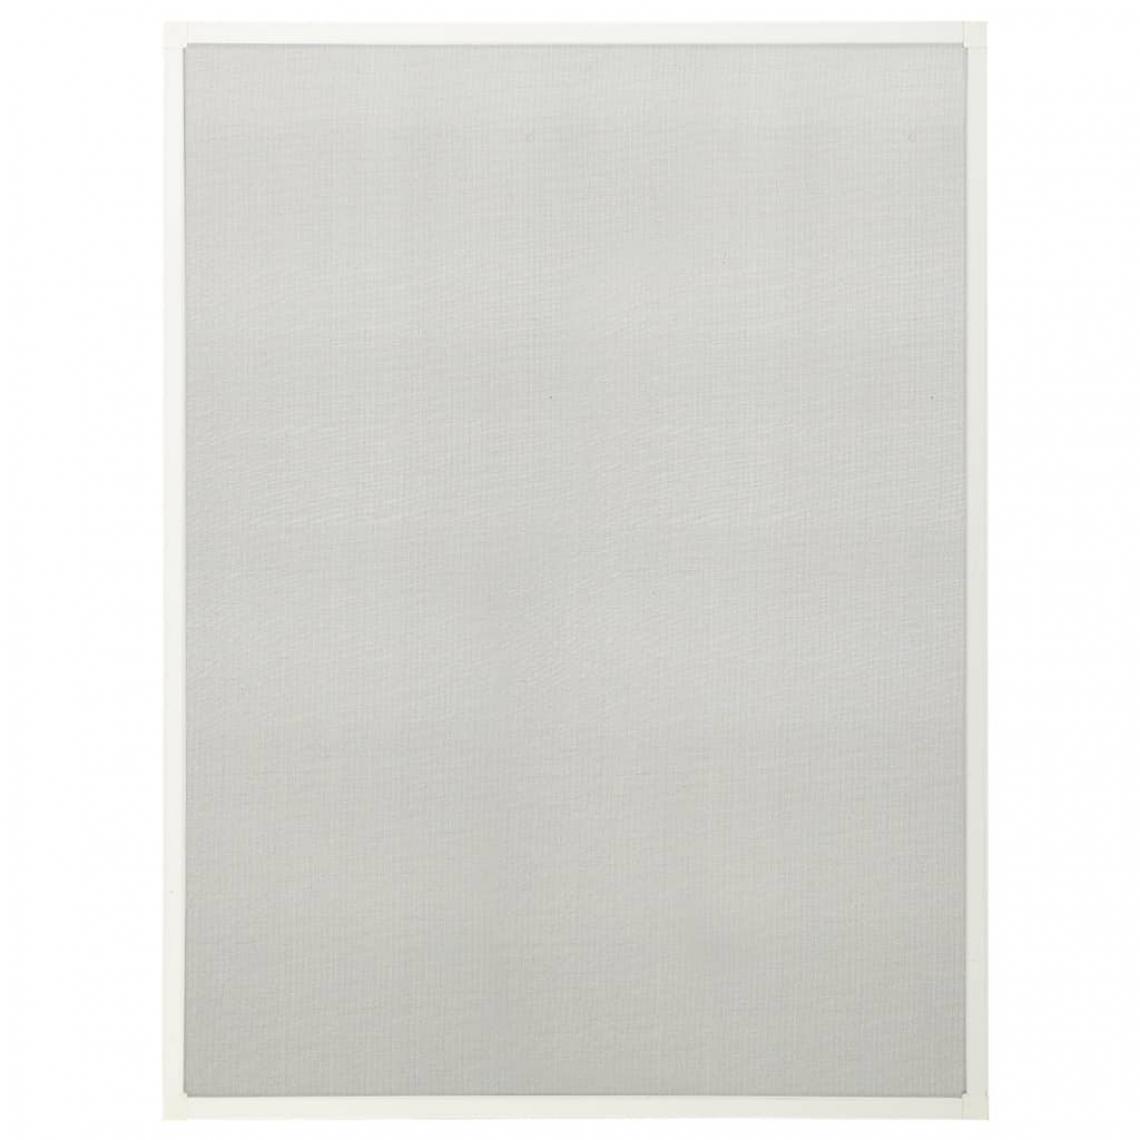 Vidaxl - vidaXL Moustiquaire pour fenêtre Blanc 80x120 cm - Moustiquaire Fenêtre